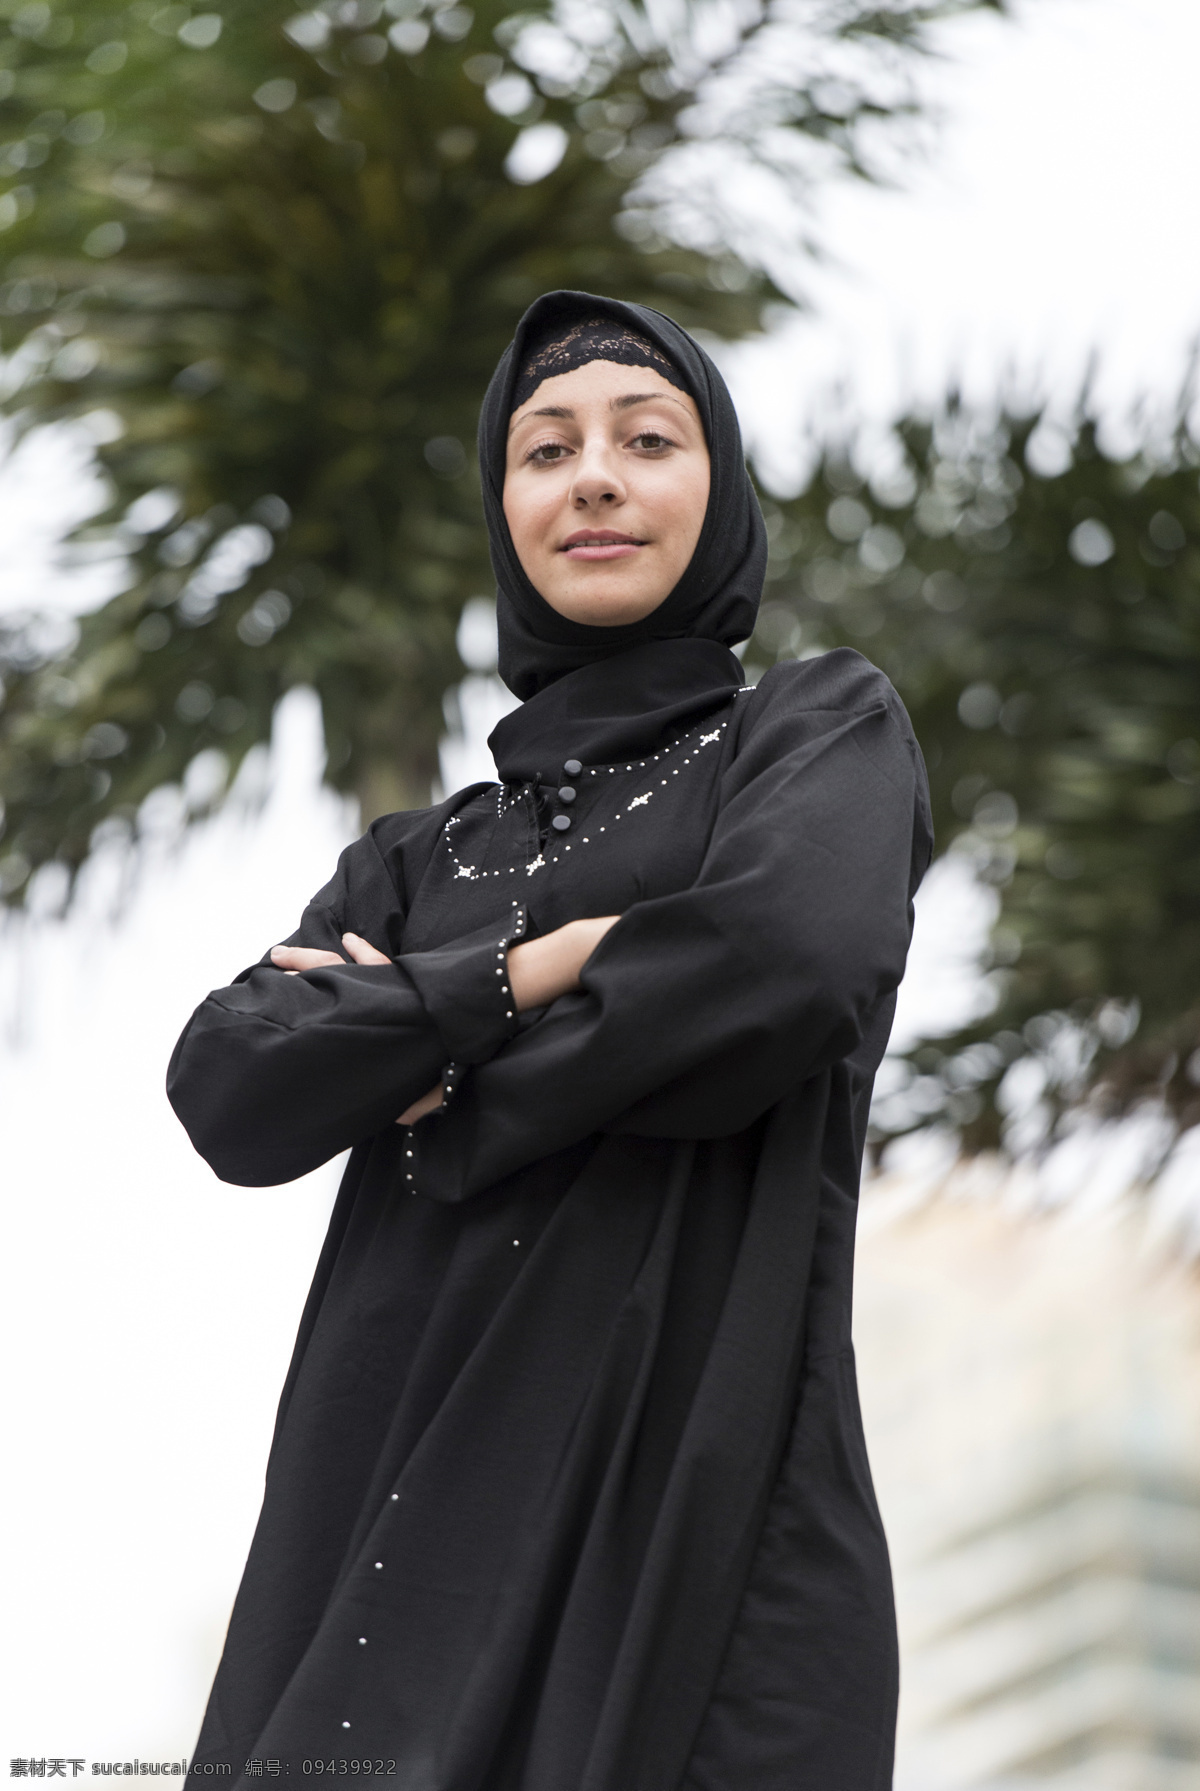 阿拉伯 女性 教徒 拉伯女性 阿拉伯女人 女教徒 信徒 伊斯兰教 宗教信仰 生活人物 人物图片